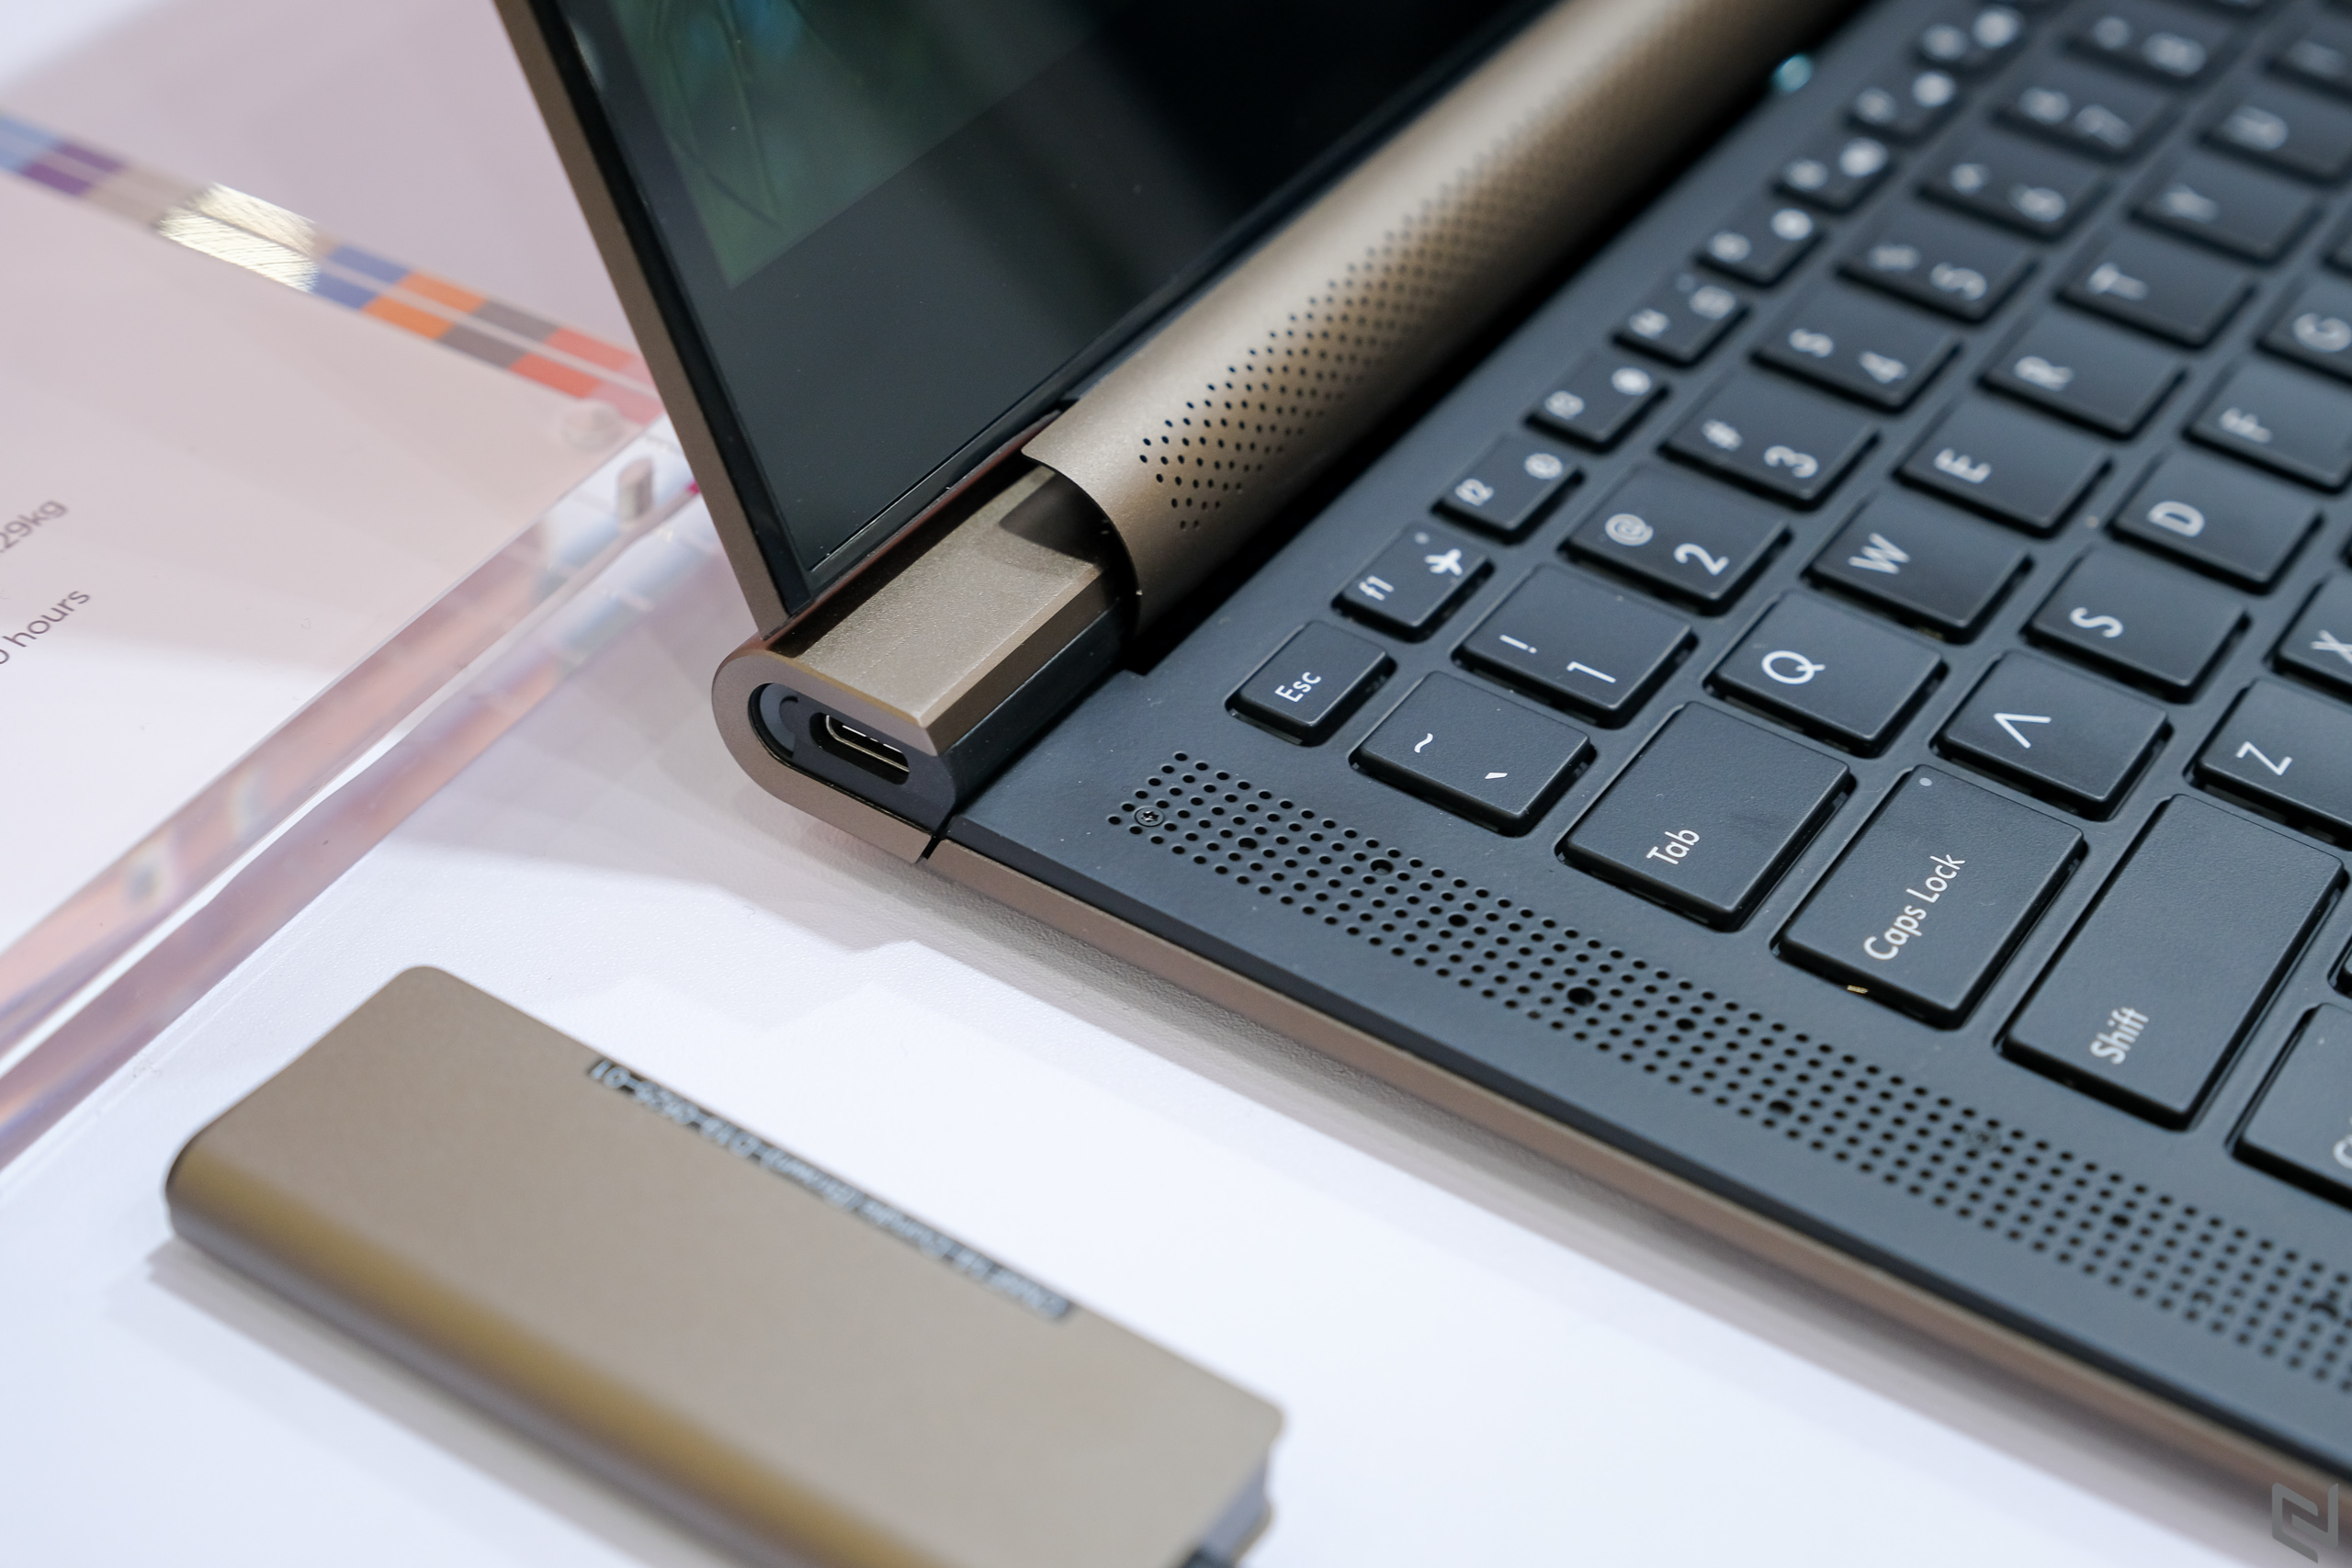 Trên tay laptop Avita Admiror tại Computex 2019, thiết kế như cuốn sổ, chỉ có 2 cổng USB-C